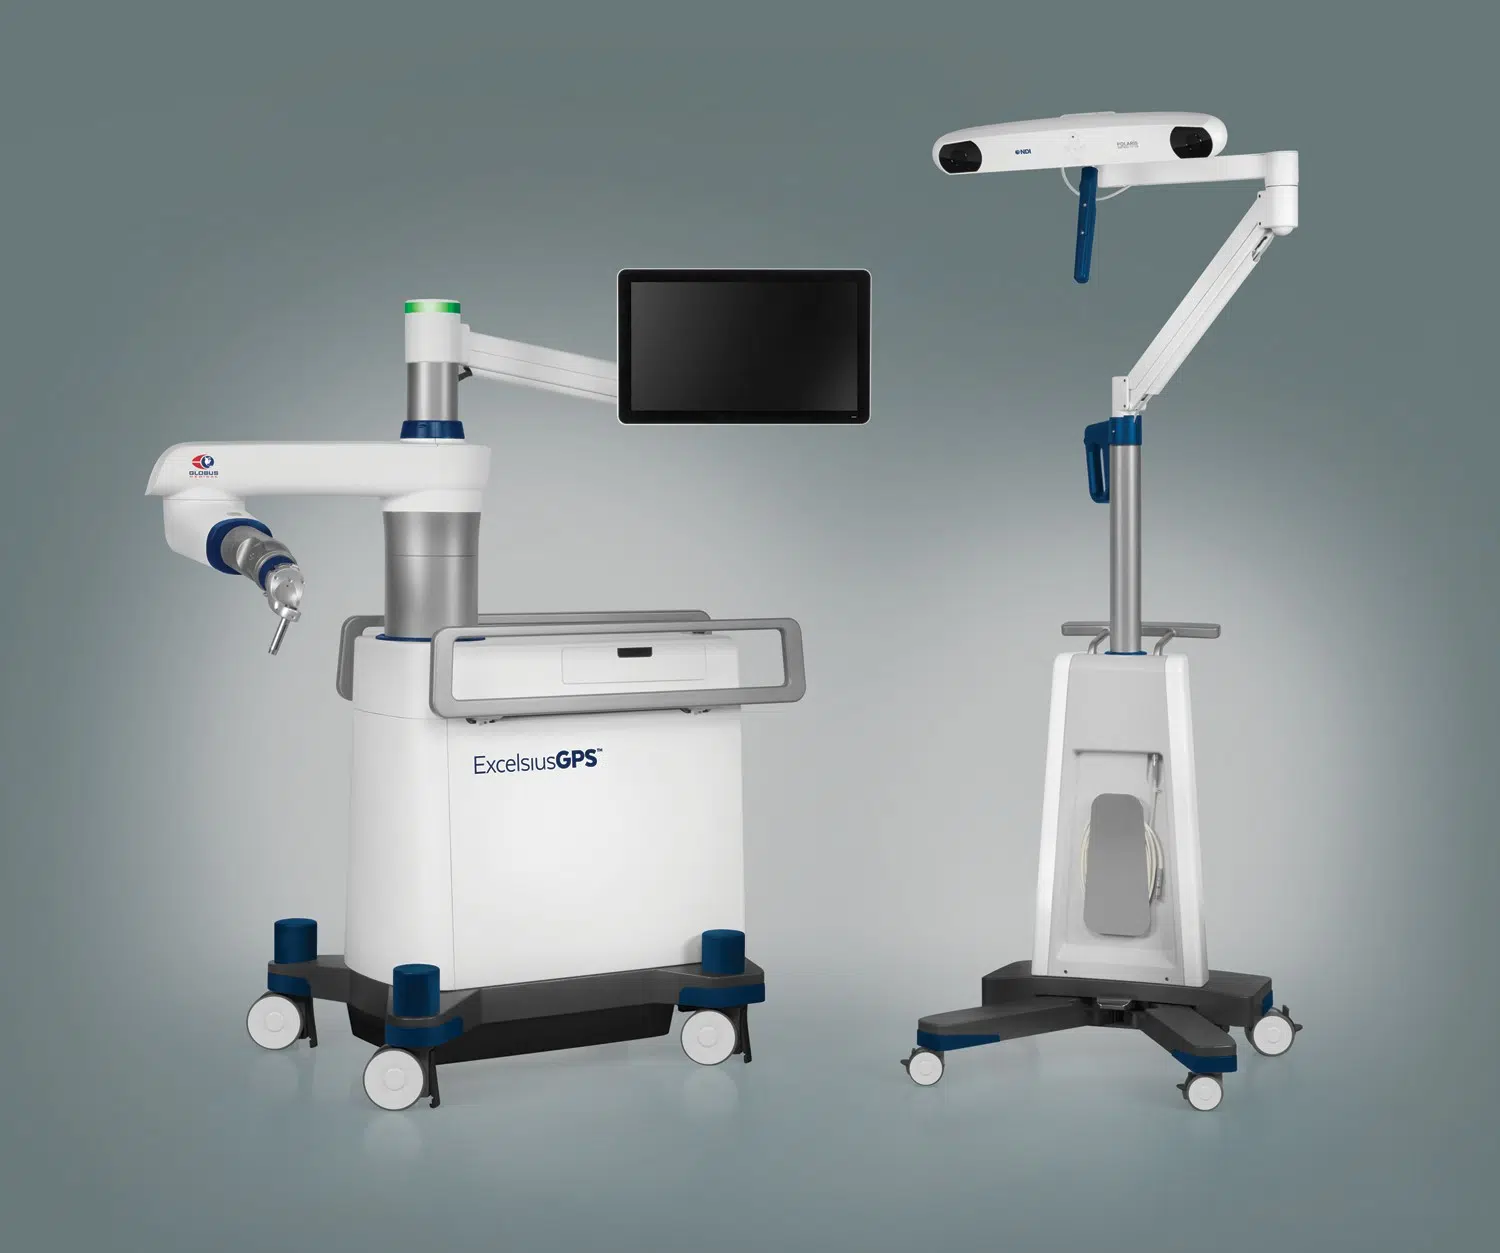 HSHS St. Vincent Acquires New Robotic Surgery Device